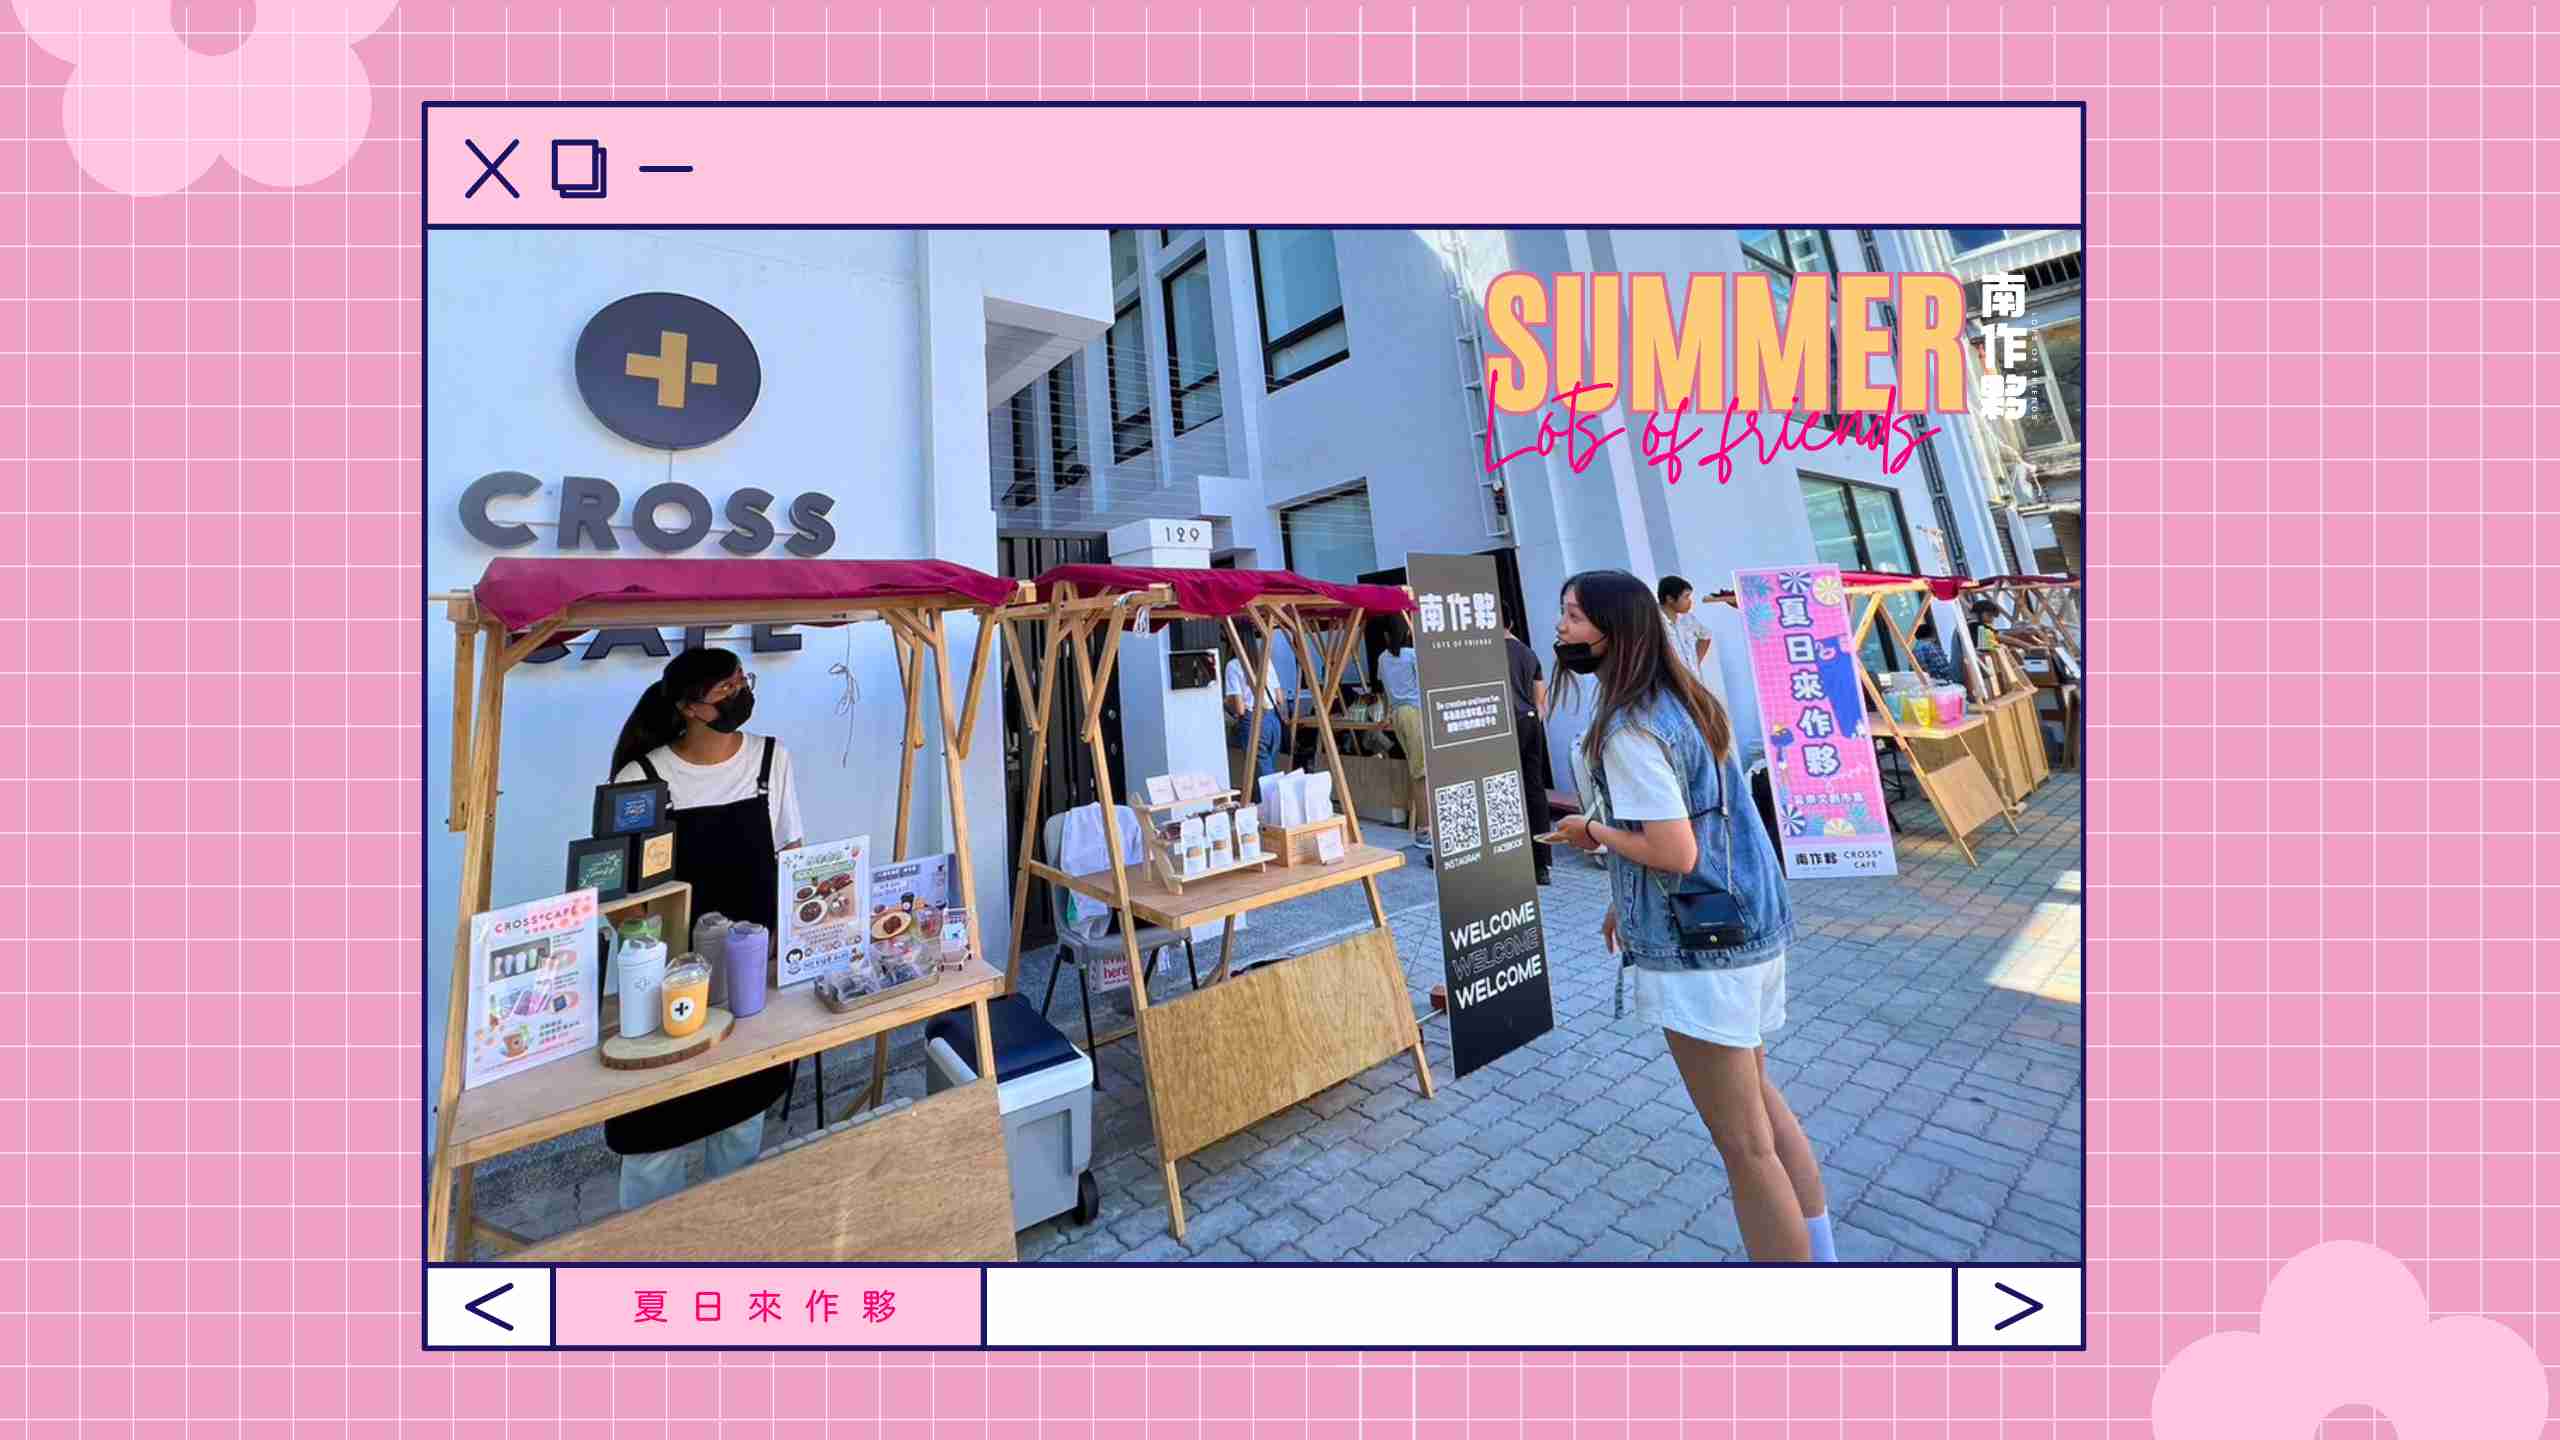 【活動消息】夏日來作夥 音樂市集熱情登場！